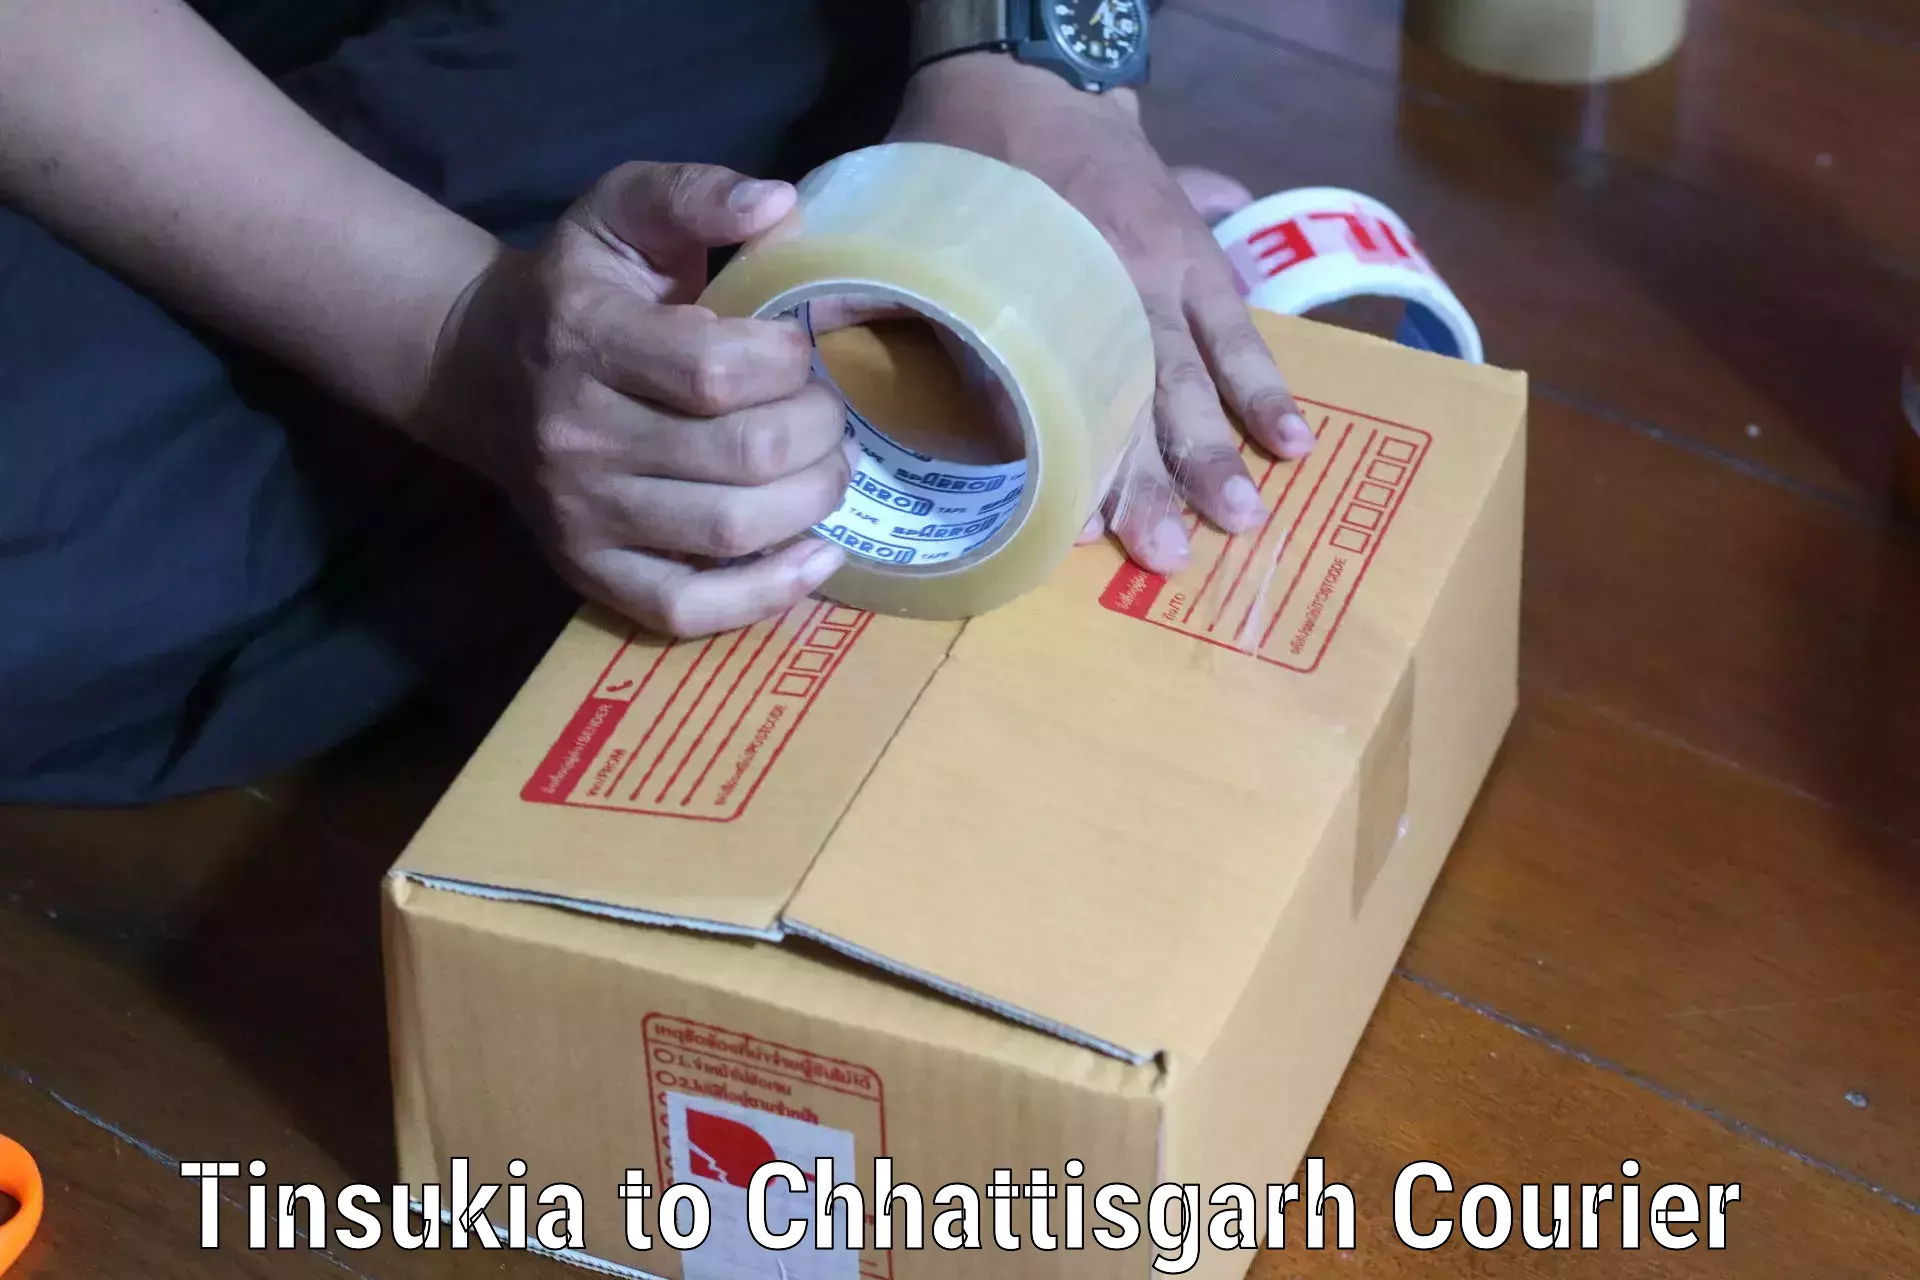 User-friendly delivery service Tinsukia to Chhattisgarh